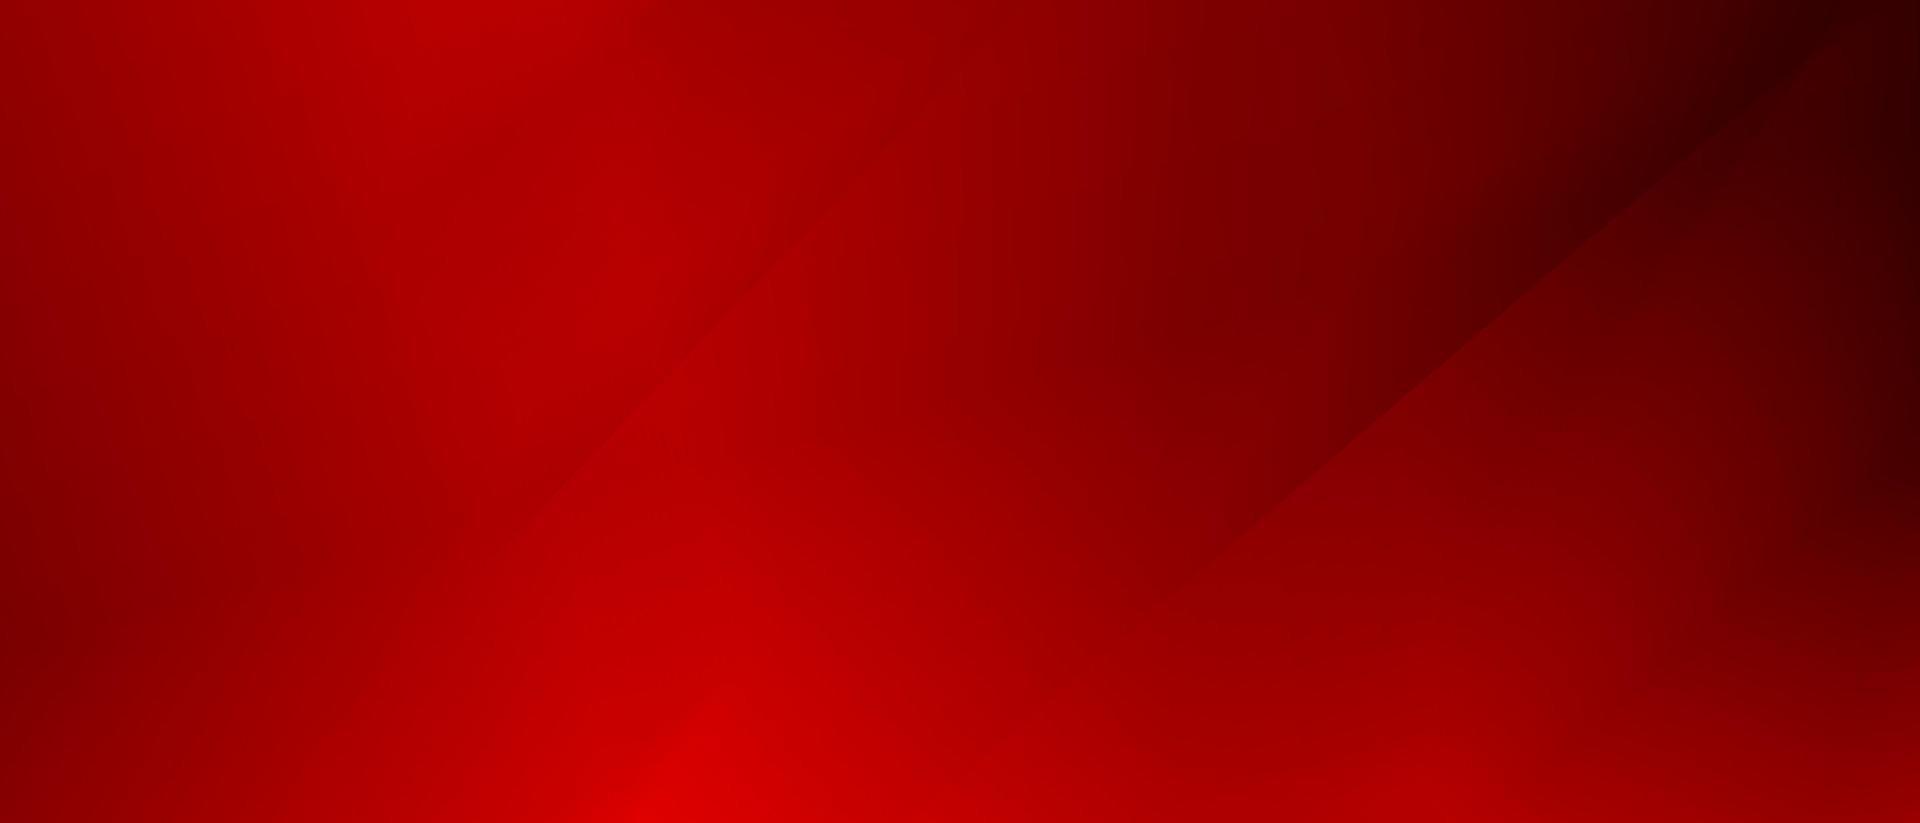 abstract rood en zwart zijn licht patroon met de helling is de met verdieping muur metaal structuur zacht tech diagonaal achtergrond zwart donker strak schoon modern. futuristische backdrop voor po vector